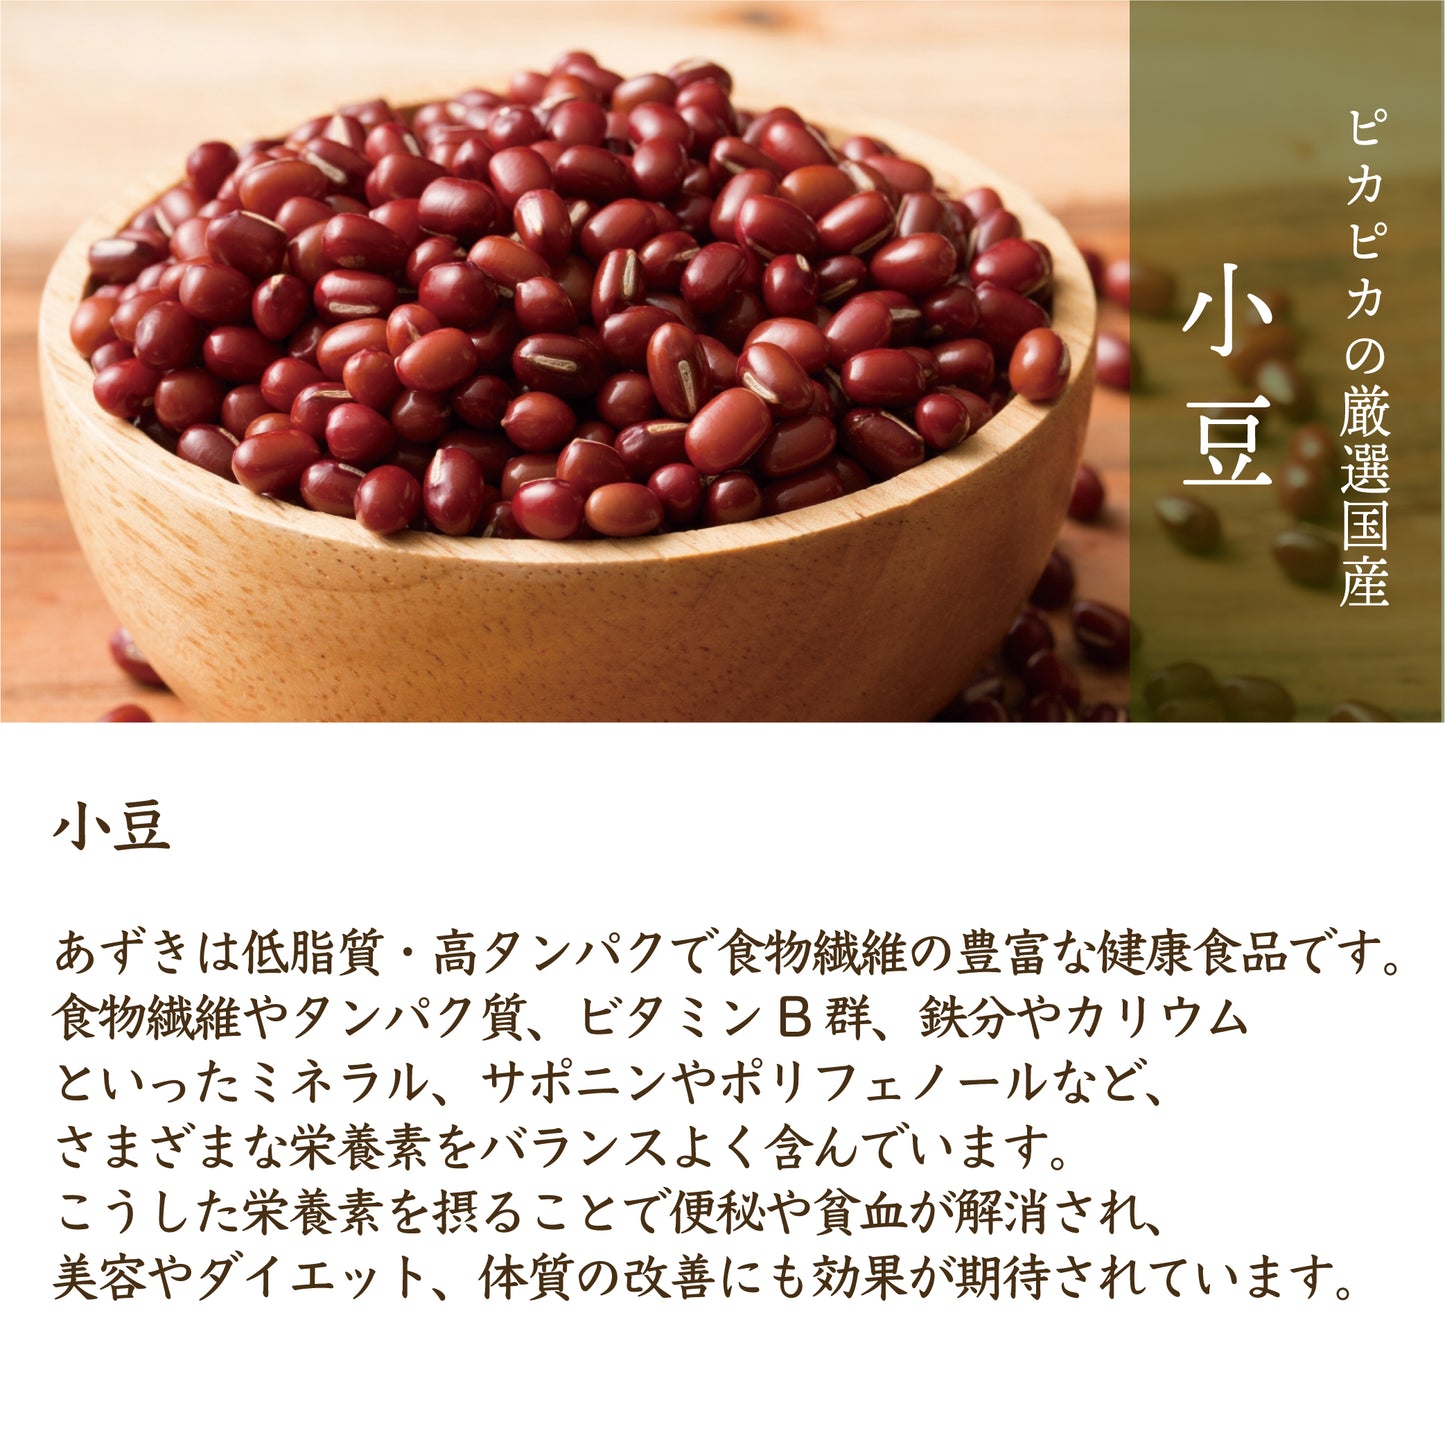 雑穀 雑穀米 国産 ホール豆４種ブレンド (大豆/黒大豆/青大豆/小豆) 9kg(450g×20袋)